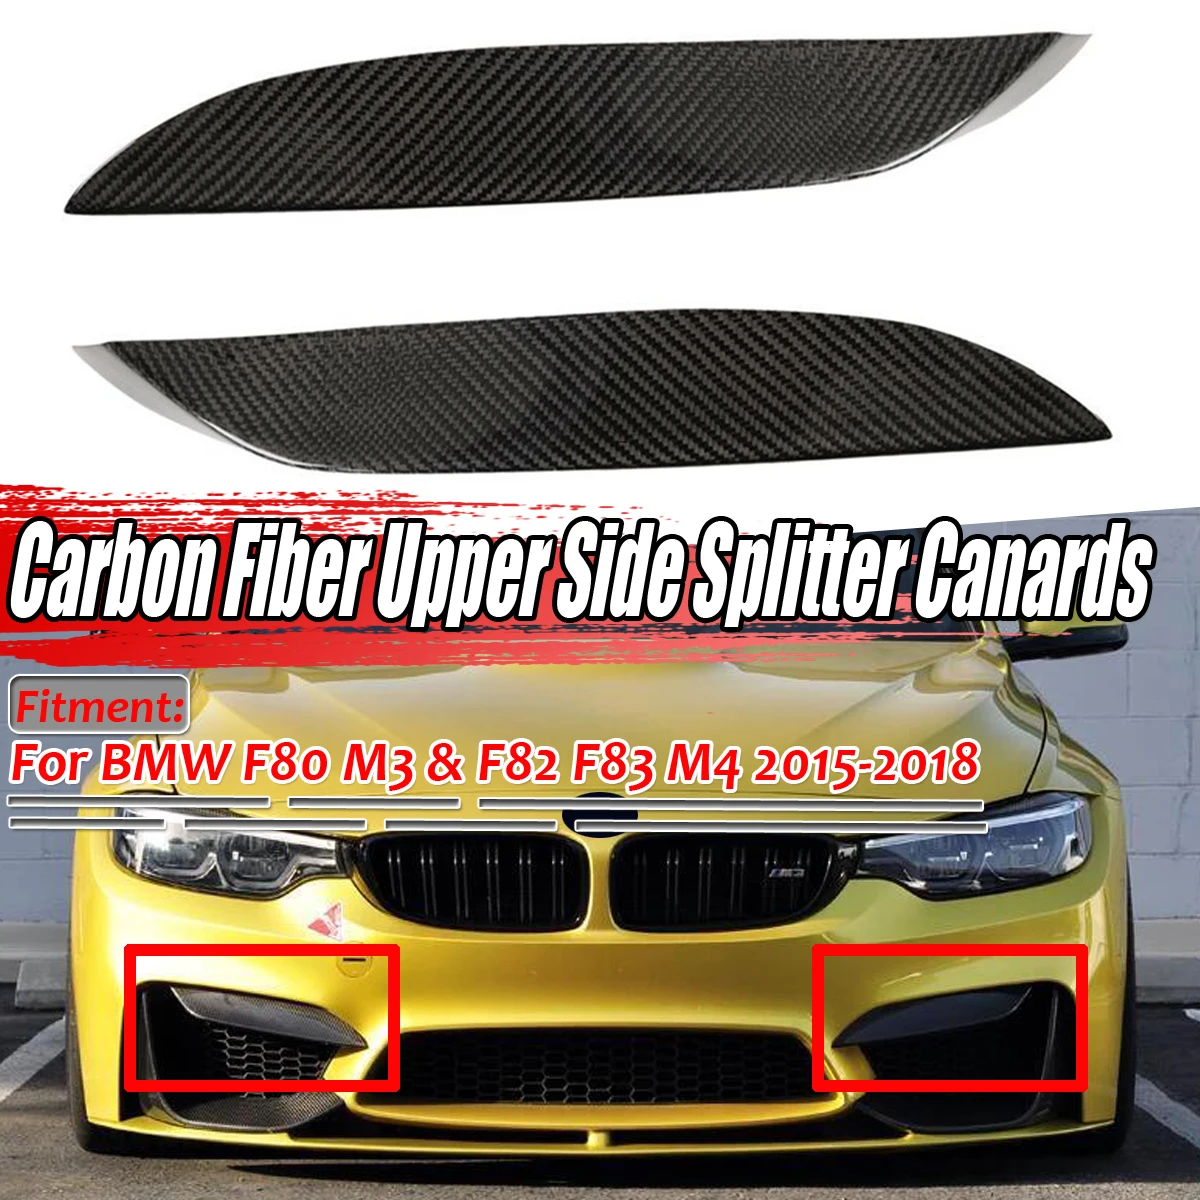 

Диффузор для губ переднего бампера автомобиля из 100% натурального углеродного волокна, верхний боковой разветвитель, накладки для губ для BMW F80 M3 F82 F83 M4 2015-2018